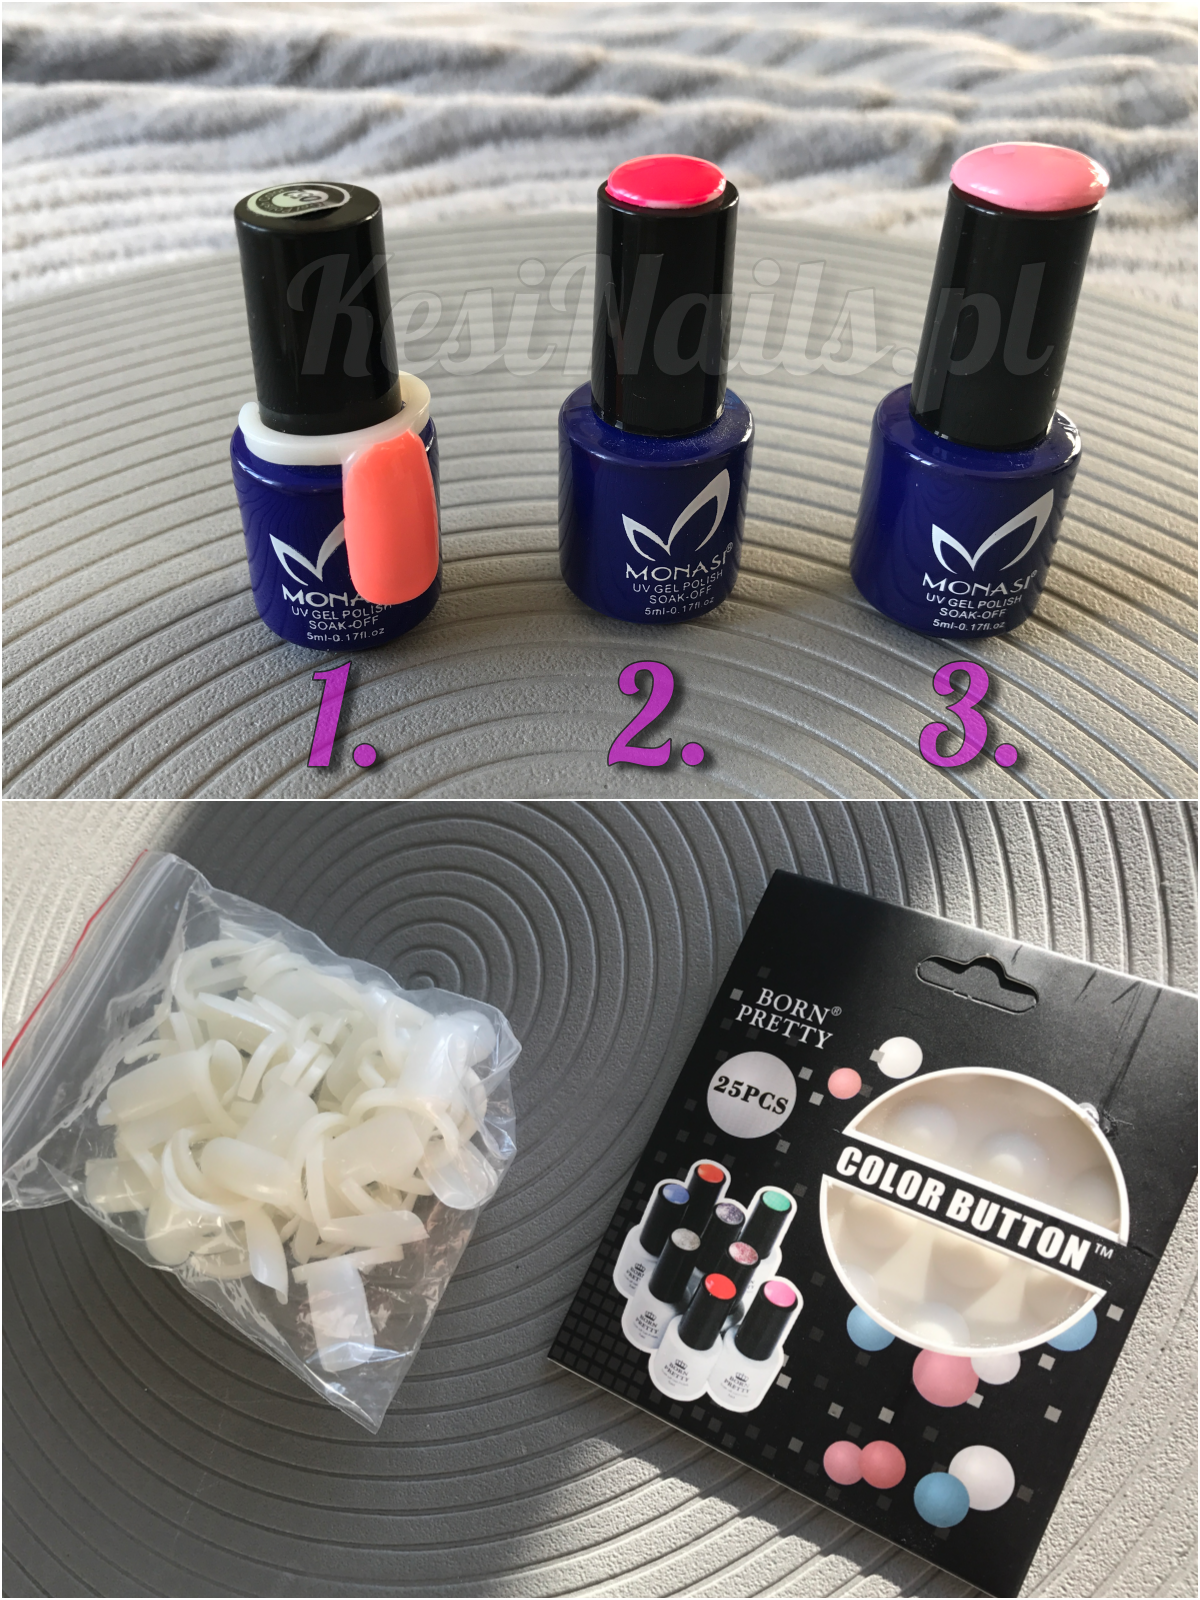 [Recenzja + DIY] Oznaczanie buteleczek lakierów do paznokci: wzorniki na buteleczki, color button + DIY :)